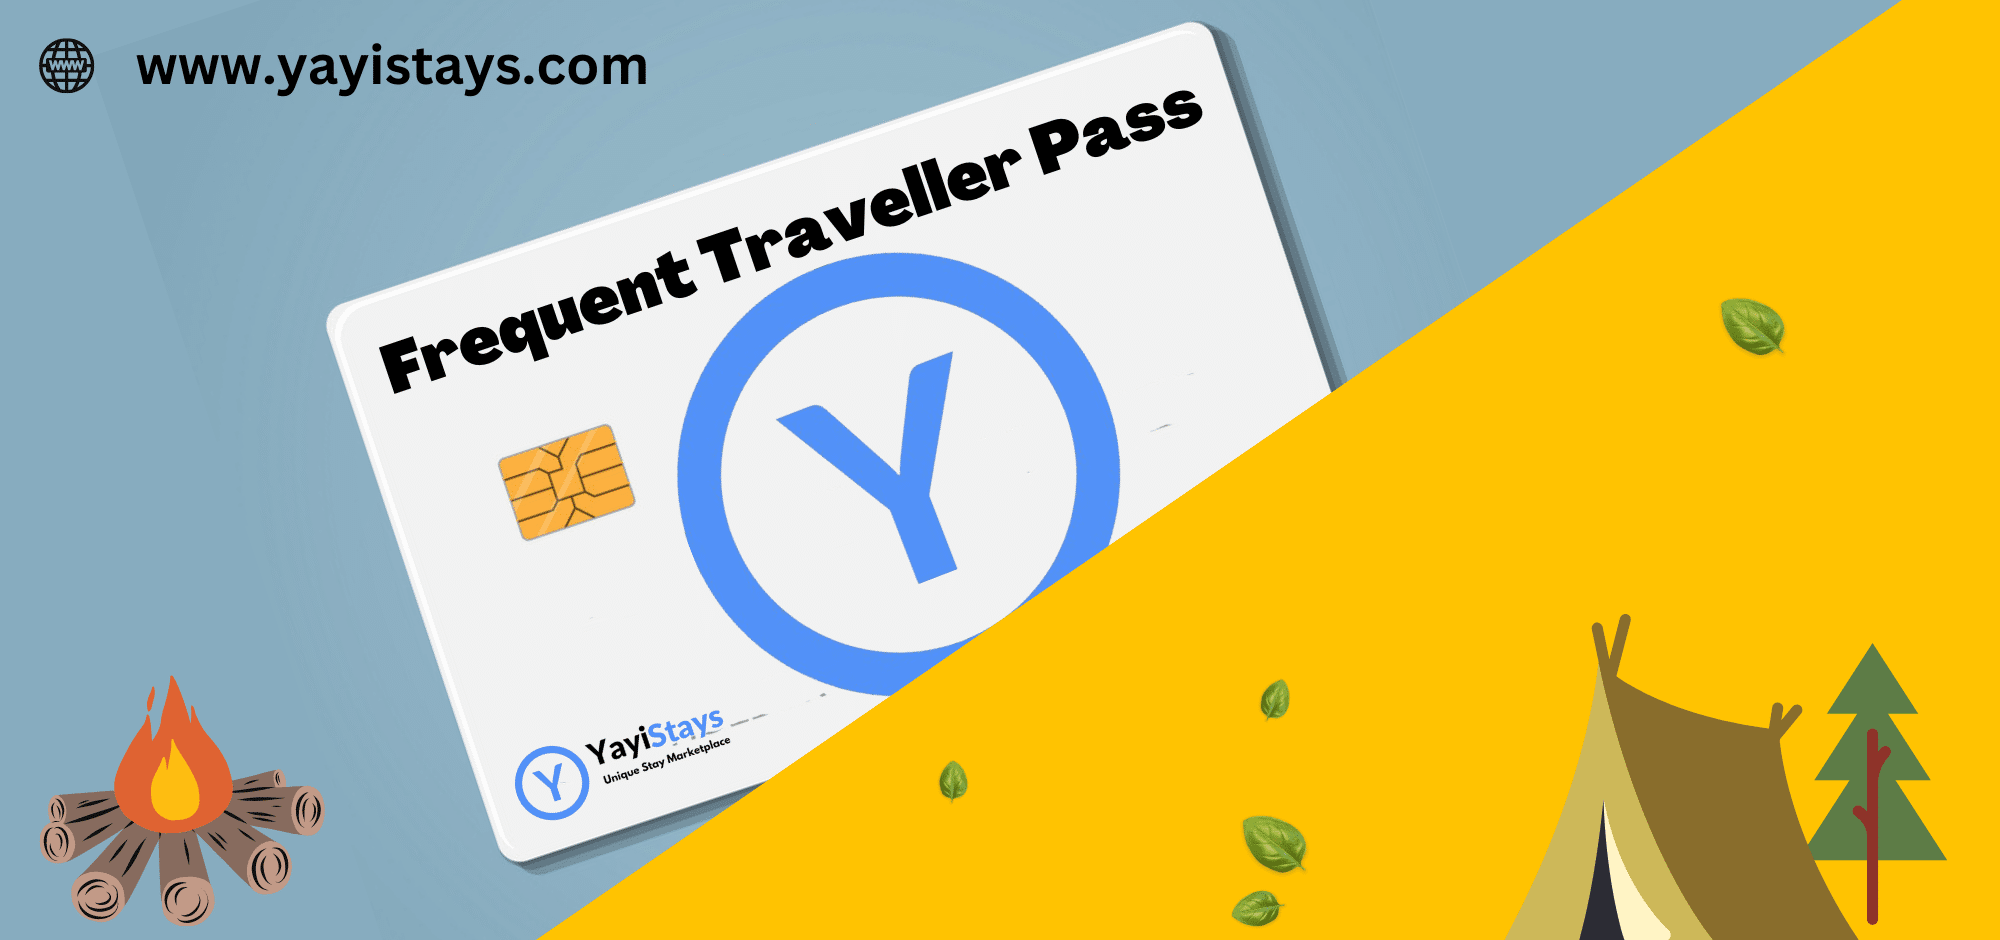 frequent traveller pass alsa